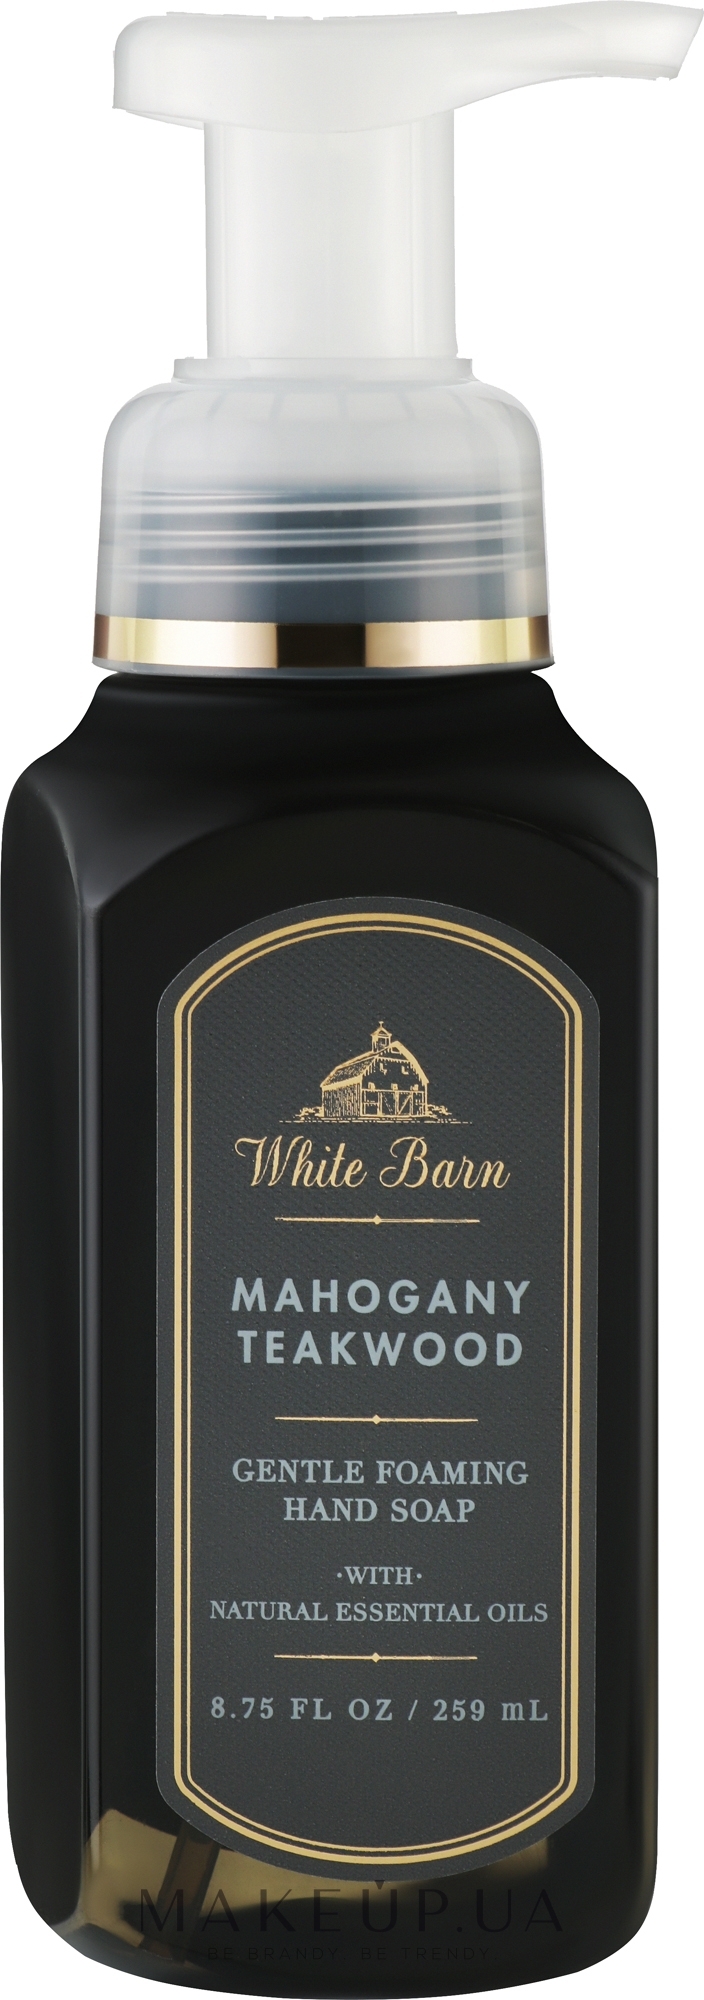 Мило-піна для рук "Mahogany Teakwood" - Bath and Body Works White Barn Mahogany Teakwood Gentle Foaming Hand Soap — фото 259ml